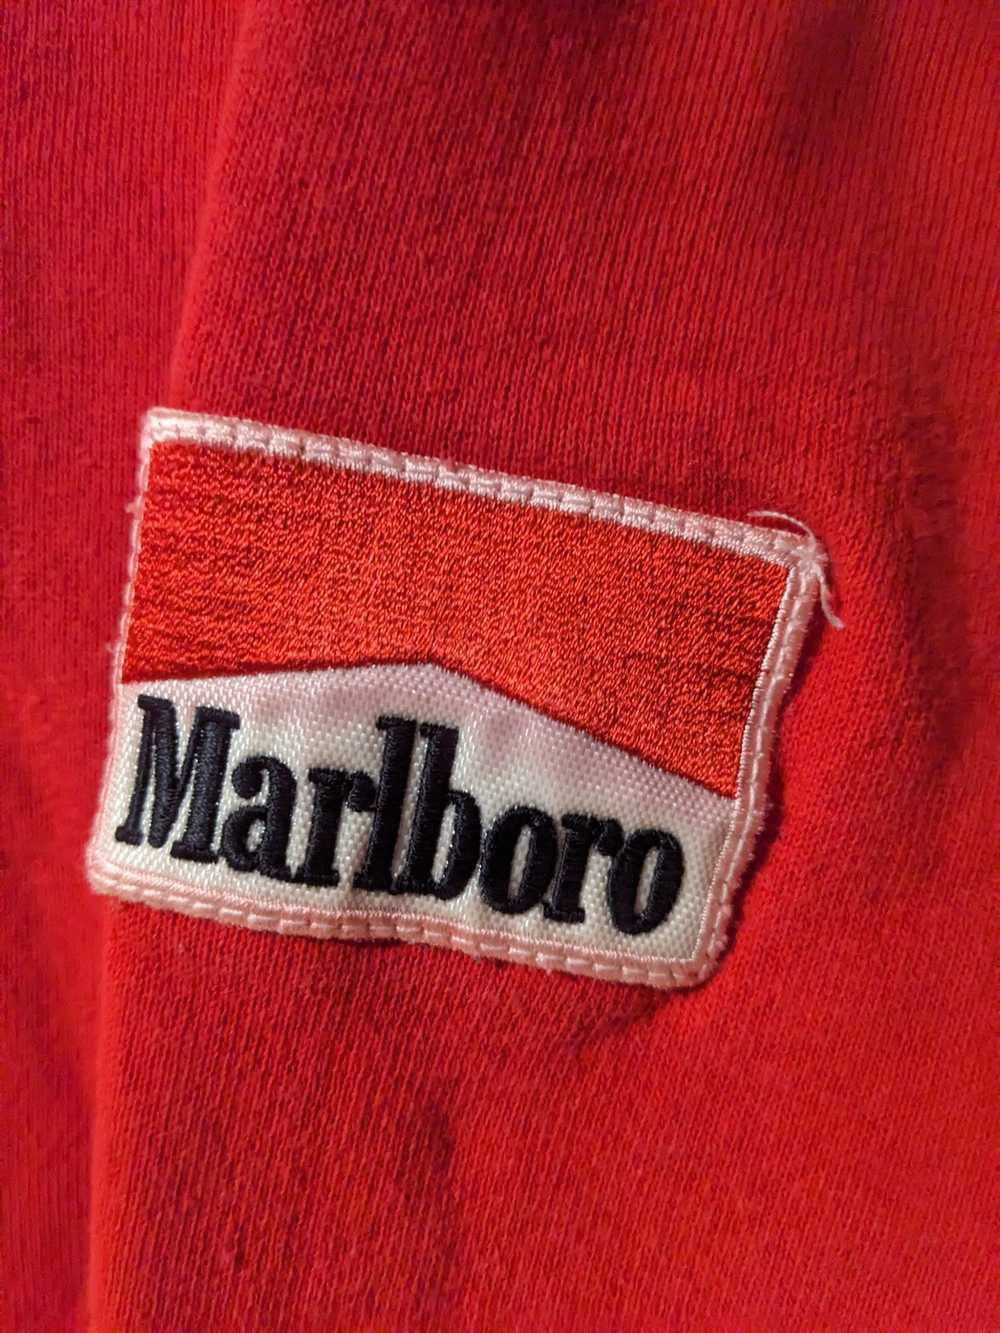 Marlboro × Streetwear × Vintage Vintage 90s Marlb… - image 2